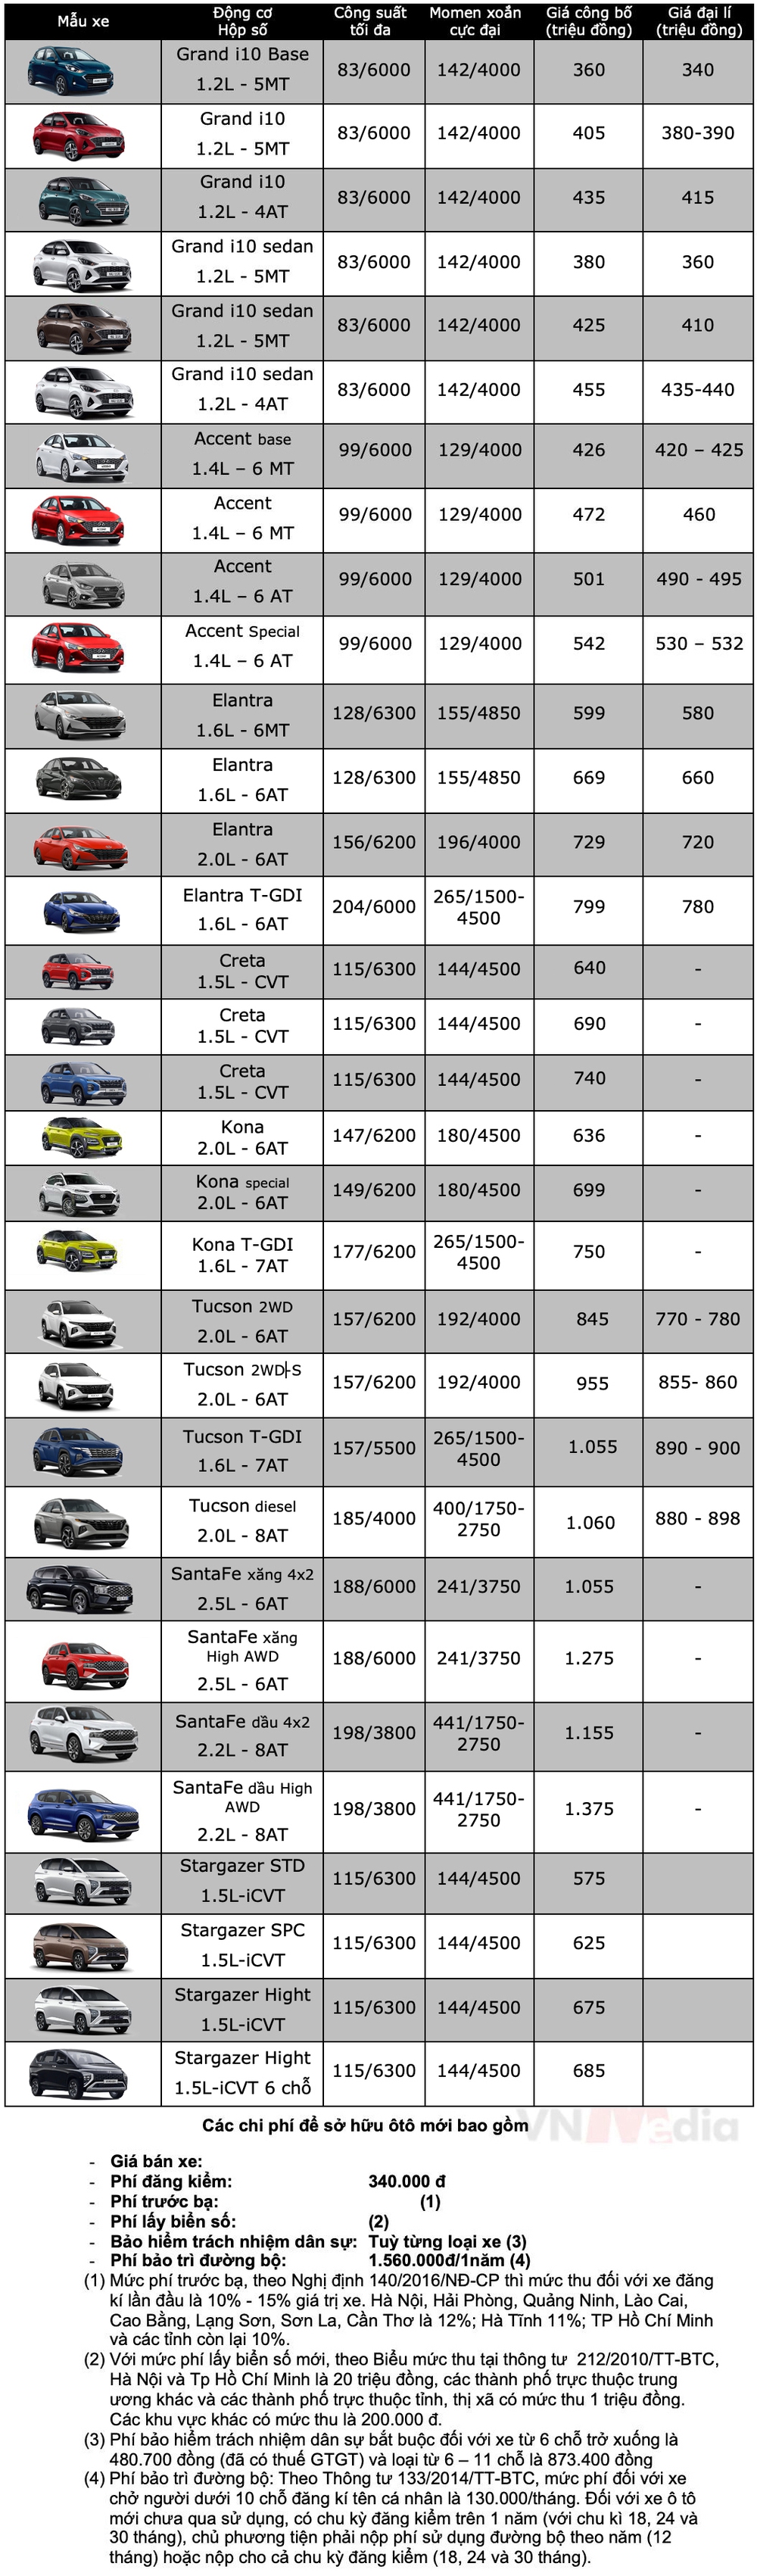 Bảng giá xe Hyundai tháng 12: Hyundai Elantra được ưu đãi 33 triệu đồng - Ảnh 2.